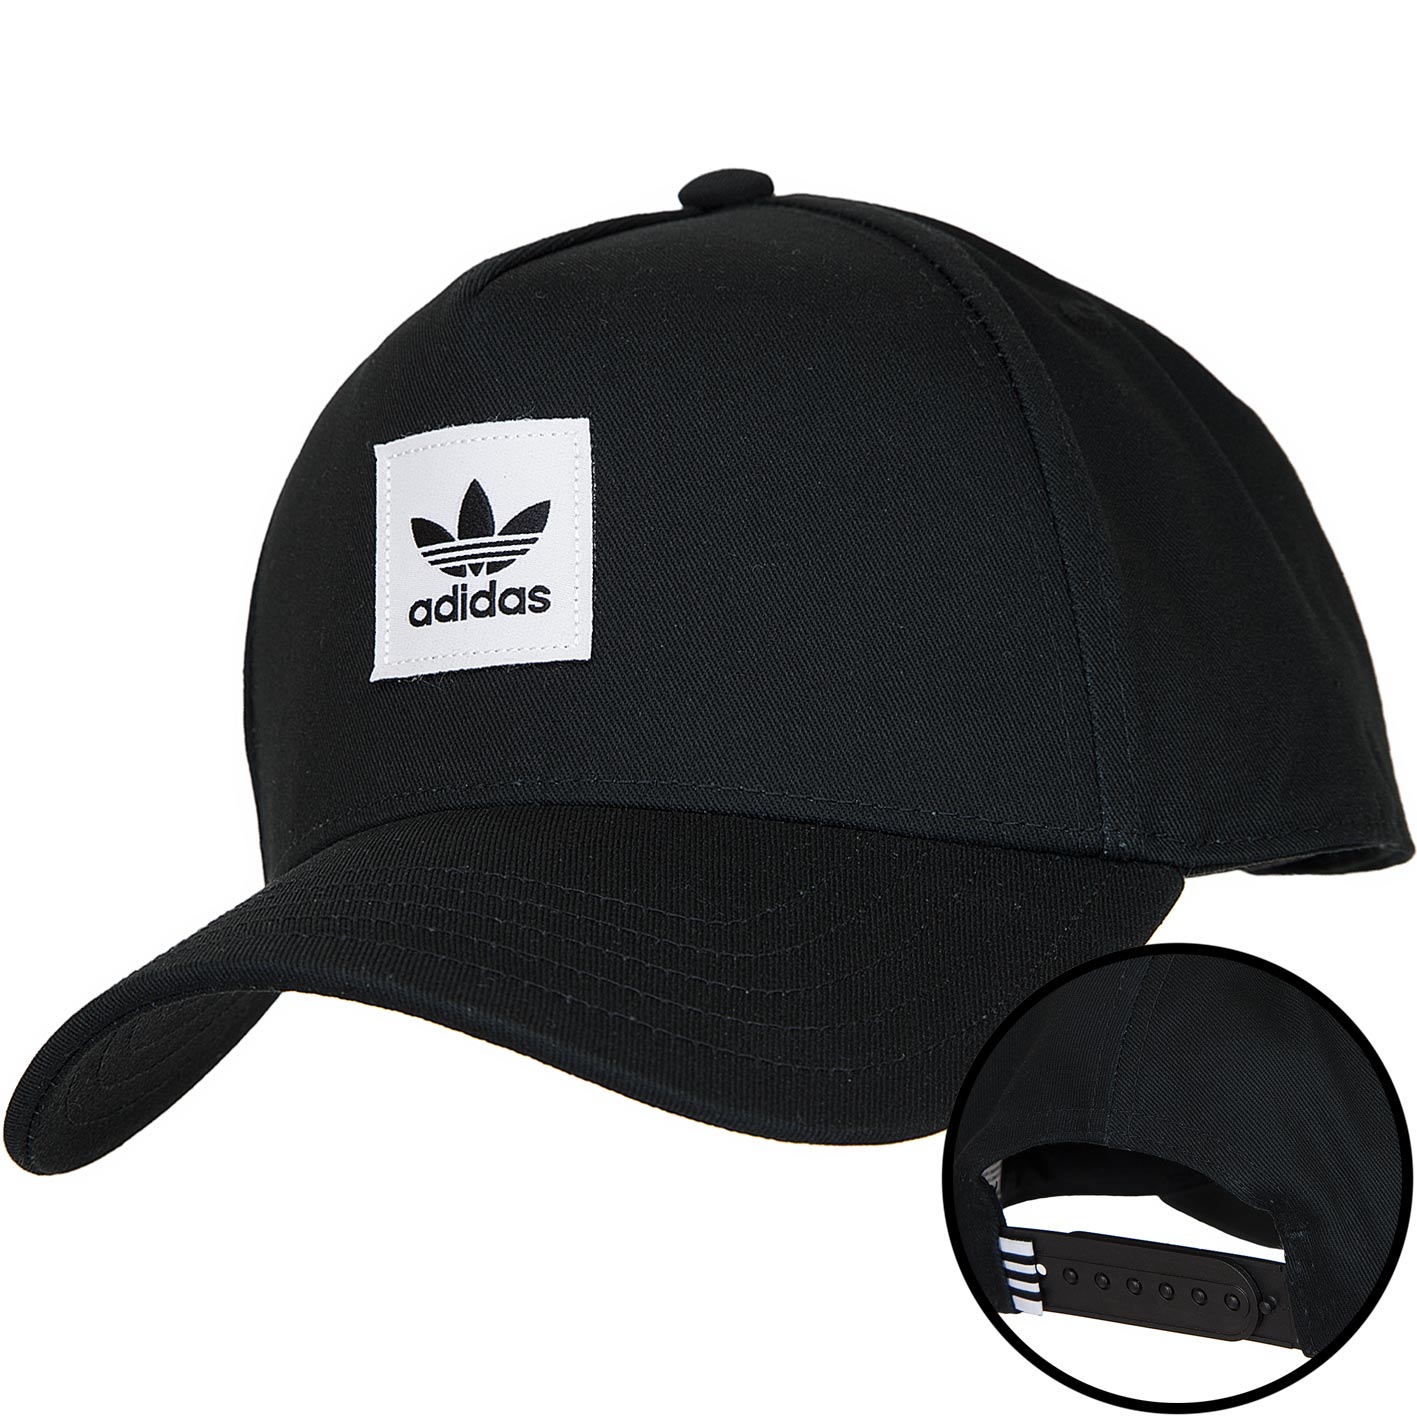 ☆ Adidas Originals Snapback Cap AFrame schwarz/weiß - hier bestellen!